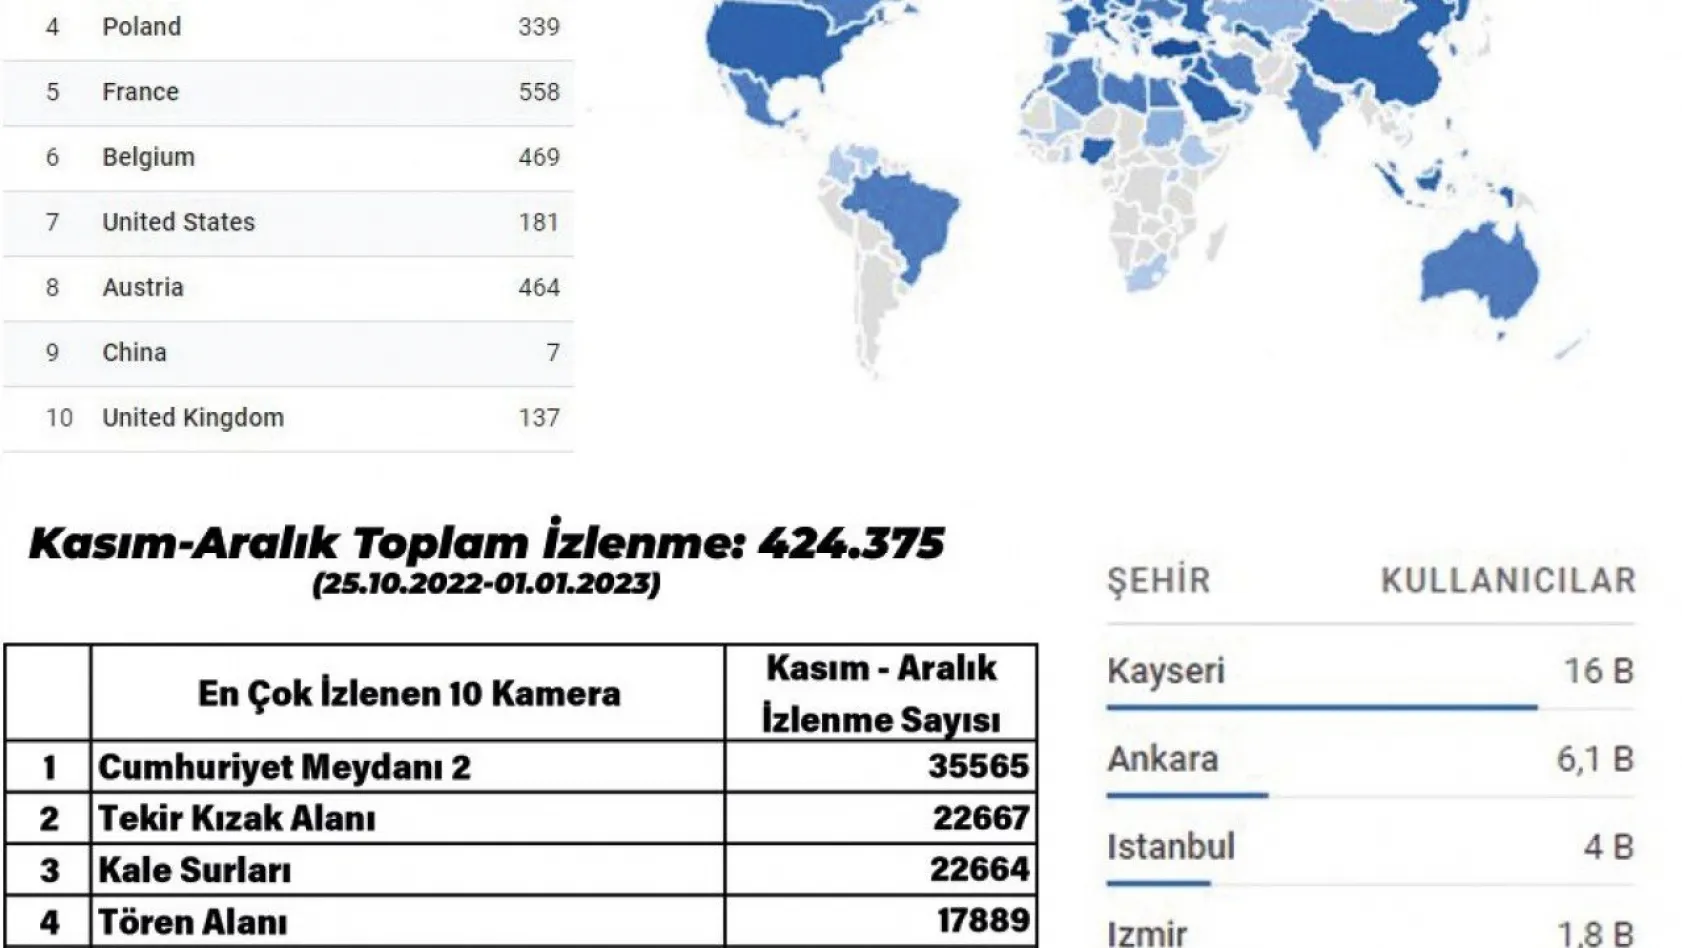 Biri bizi gözetliyor!  424 bin 375 kişi yurt dışından Kayseri'yi izledi